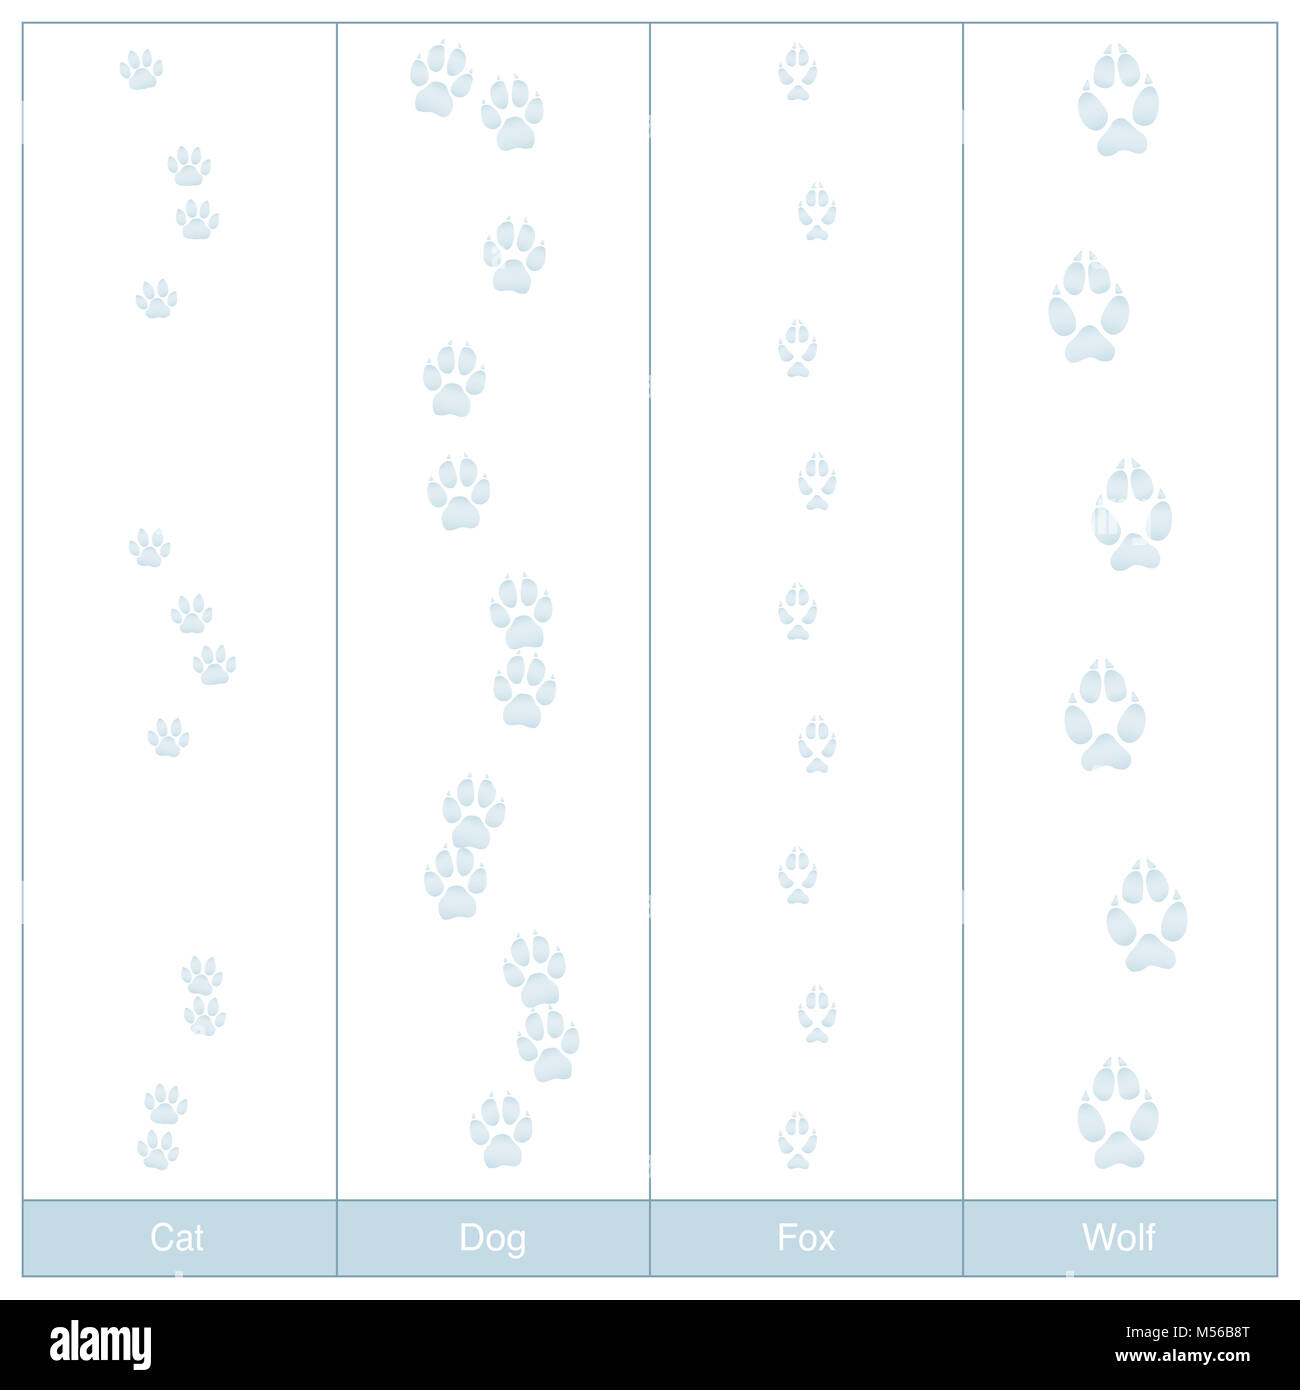 Titel von Hund, Katze, Fuchs und Wolf. Carnivore Pfotenabdrücke im Schnee zu vergleichen - Abbildung auf weißen Hintergrund. Stockfoto